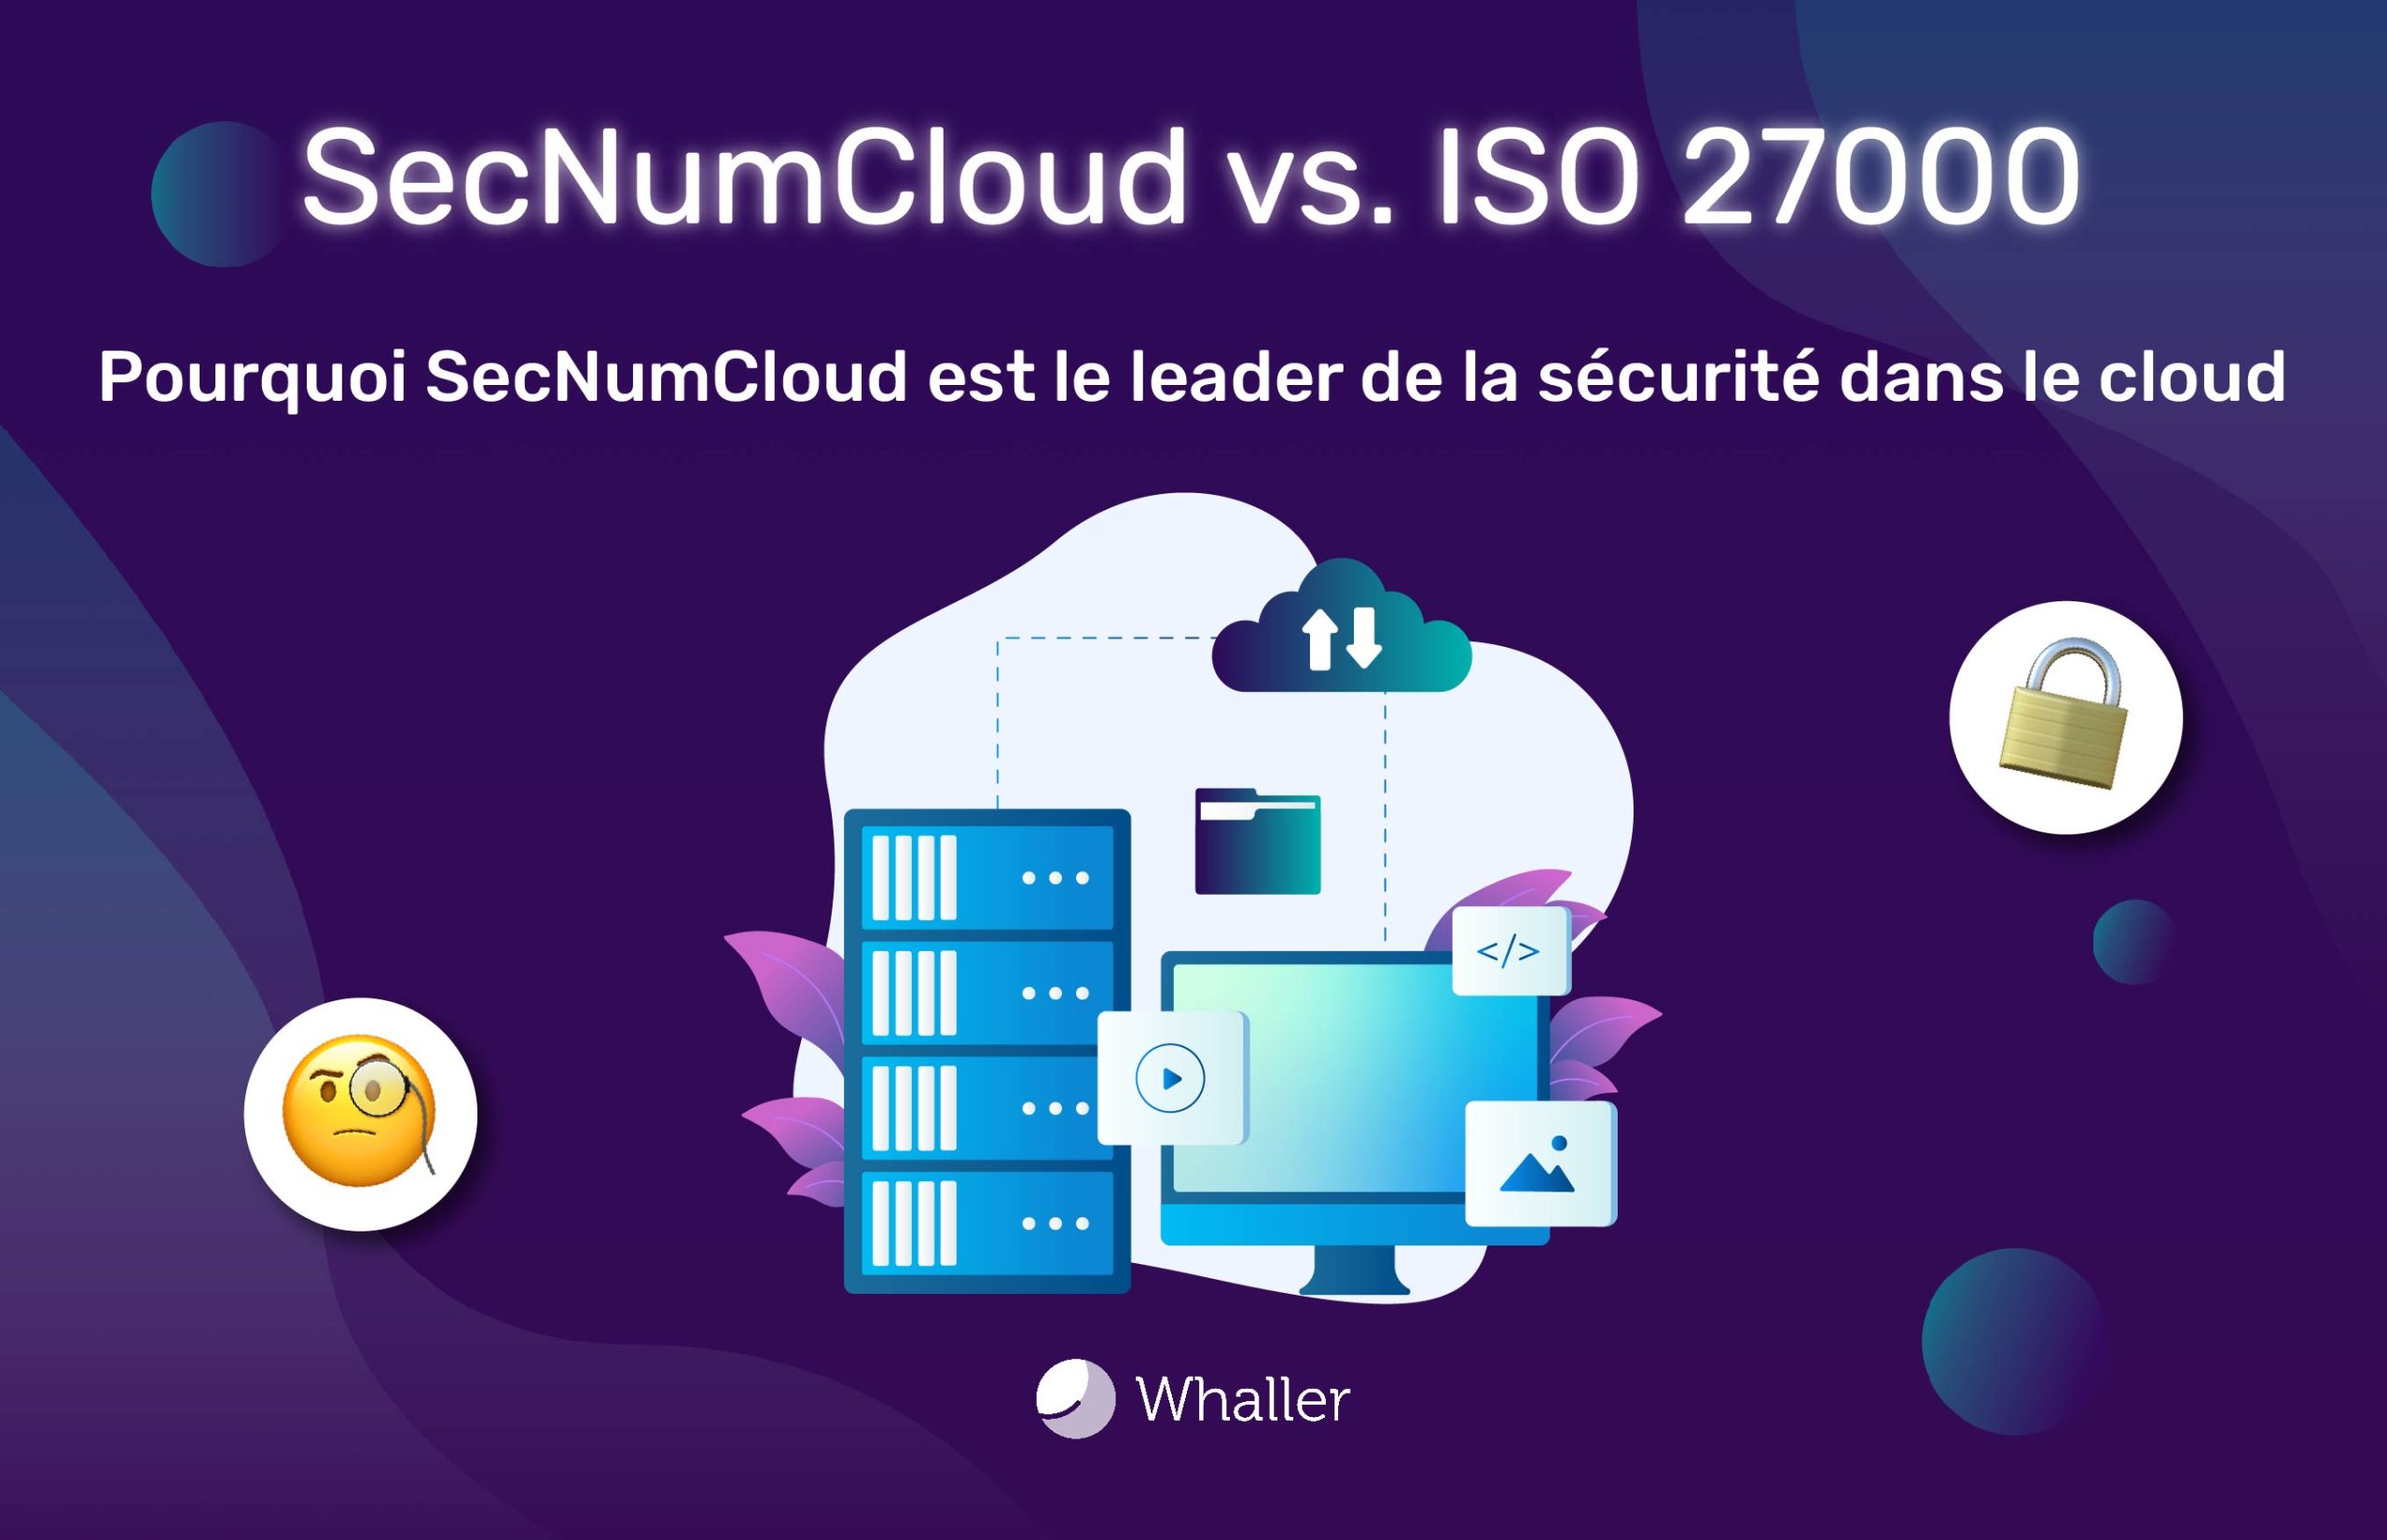 SecNumCloud > ISO 27000